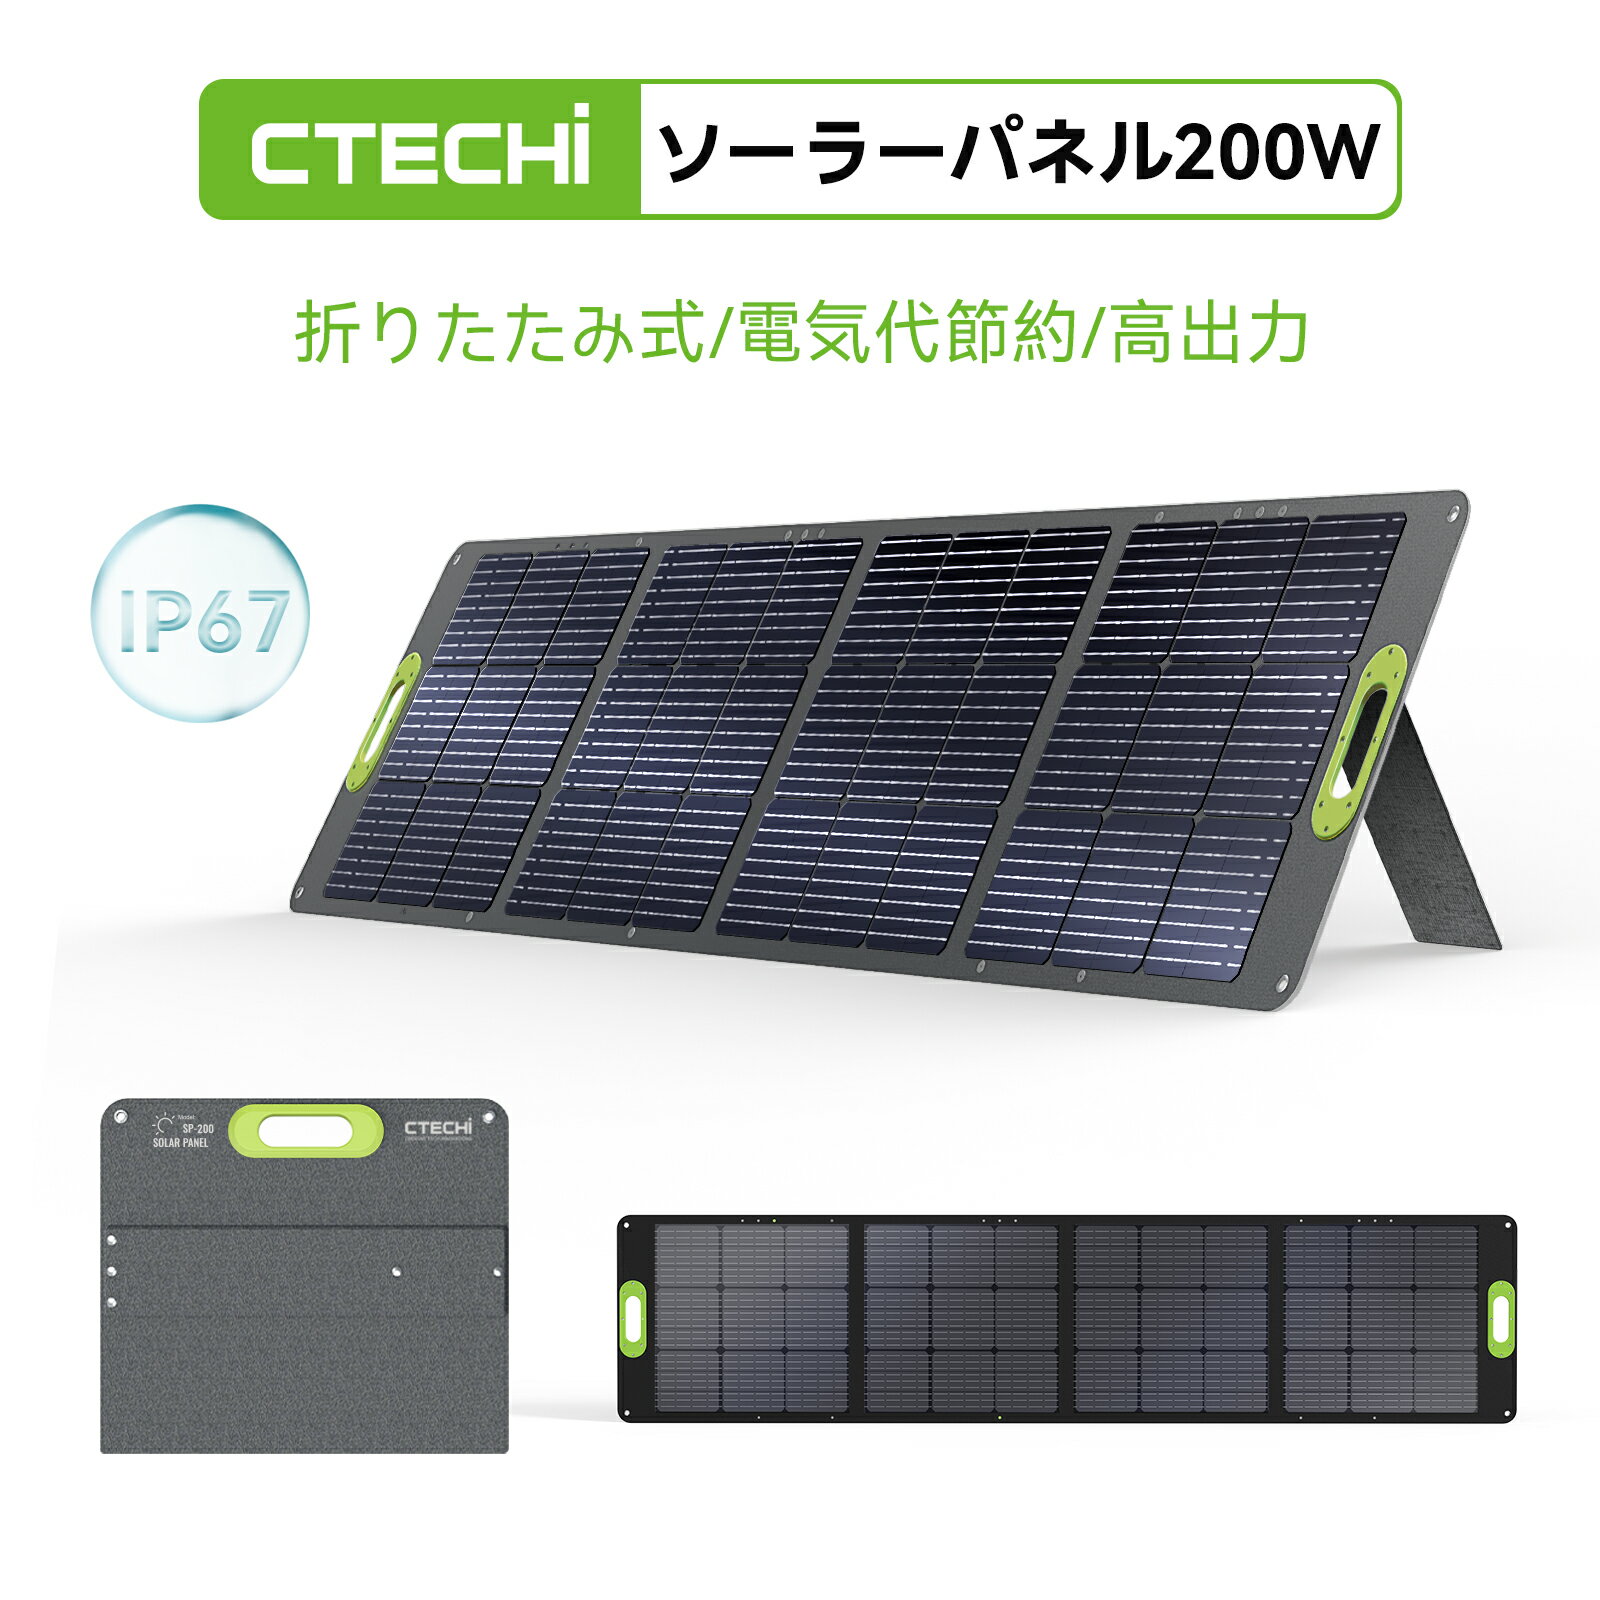 CTECHi ソーラーパネル 200W 商品説明 【ソーラーパネルとは】 ソーラーパネルは、太陽光で発電を行うためのパネル状の設備のことを指します。太陽光パネルや太陽電池板、太陽電池モジュールなど呼ばれ方はさまざまです。クリーンなエネルギーなので、地球環境の保護に貢献できる 【最新ETFE材質採用&23.5％高変換効率】 CTECHiソーラーパネルは、単結晶太陽電池を採用し、透明性の強い、光透過率が高くのETFEフイルムを覆い、太陽エネルギーの変換率が23.5％に達成します。 従来のPET/SEWN材料を使用したソーラーパネルと比べ、ETFE素材は他のフッ素樹脂に比べて塗膜厚が厚く、耐熱や耐久性などに優れます。長く日光に当ても高温を恐れず、燃焼や爆発の危険がありません。 2つステント付き、太陽光に応じてソーラーパネルの置く角度を調整し、太陽エネルギーを最大限利用できます。 【高い互換性/適用性広い】 Mc-4ケーブル付属されて、CTECHiのポータブル電源だけではなく、市販のほとんどのポータブル電源へ充電できます。ポータブル電源との組み合わせて、日中に発電した電力を使用することができ、余った分は蓄電池に蓄えることができます。 自然災害の影響で停電が発生した際に、ソーラーチャージャーで太陽光を使って電源の確保が可能になります。 (充電が可能かどうか確認できない場合は、ポータブル電源の販売店にアダプタの仕様をご確認ください。) 【ポータブル電源との組み合わせで電気代を削減】 「ctechi折りたたみ ソーラーパネル sp200」は、災害などの緊急時やキャンプ、車中泊などで活用できるソーラー充電器です。Ctechi ポータブル電源の全シリーズに対応しているため、組み合わせることで、いつでもどこでも自由に充電ができます。 また、日中に集めた電気をポータブル電源を使って蓄電し、それを活用することで月々の電気代を削減し、環境にもやさしいエコな暮らしを実現することができます。 【折りたたみ式、持ち運びにも便利】 （収納サイズ64*55*5cm、7.5kg）で、握りやすいハンドルにより、女性でも簡単に持ち運ぶことができます。 コンパクトサイズに折り畳むことができます。収納型スタンドを搭載しており、展開するとすぐに使える、面倒な設定手間などは不要です。折り畳み時のコンパクト化を実現したので、収納時も場所を取りません。 ソーラーパネルには穴四つ付き、家のベランダ、アウトドアでのテントまたは車の天井に取り付けることができます。 【安全性高い/IP67防水防塵】 Smart ICテクノロジー搭載し、自動的にソーラーチャージャーに接続したデバイスを識別し、適当な電流でデバイスを快速充電でき、過充電、過負荷、過電流、短絡保護機能も付き、安全性を確保します。 また、ソーラー充電器は防水・防塵性能はIP67となっており、 「粉塵の侵入を完全に防ぎ、かつ水流にも耐える」性能のため、ゲリラ豪雨などを除く、通常の雨や風の場合も問題なく使用することができます。 ※出力ポートは防水ではありませんので、ご注意ください。 【関連キーワード検索】 CCTECHi 最新型ETFEソーラーチャージャー 折りたたみ式 折り畳み 23.5%高変換効率 23.5%高転換率 単結晶シリコーン DC出力 IP67防水 ソーラーパネル 200w ソーラーパネル 折りたたみ ソーラーパネル 小型 太陽光発電 電力需給逼迫 電力需給ひっ迫 節電対策 ポータブル電源 蓄電池 バッテリー 大容量バッテリー 家庭用バッテリー 車中泊 アウトドア 防災グッズ 停電対策 非常用電源 節電対策 コンパクト 太陽光パネル 複数並列可能 400W高出力実現 停電、地震、台風、暴風、竜巻、豪雨、豪雪、洪水、崖崩れ、土石流、高潮、地震、津波、噴火、地滑りなどによりブラックアウト キャンピング、車中泊、キャンプ、登山、バイキング、旅、BBQ、運動会、パーティー、車載用、お釣り、夜釣り 【30日間の無理由返品保証と1年間の無料補償保証】 パッケージ内容：1*ソーラーパネル本体、1*MC-4ケーブル、日本語取扱説明書。 万が一何か問題や不具合などがございましたら、お気軽にお問い合わせください。24 時間以内（営業日）に迅速に対応致します。 【ご注意】使用時の発電電力量は、天候条件、実際の日射、設置場所の周辺環境などの条件により大きく変化する場合があります。ご了承ください！ 【注意事項】 ・当店の商品は全て国内から配送されます。 ・国内配送の商品は国内でのお買い物と同じく消費税が発生いたします。関税はかかりません。 ・色がある場合、モニターの発色の具合によって実際のものと色が異なる場合がある。 FQA よくある質問 デバイスに充電できないのはなぜでしょうか？ ソーラーパネルに太陽光が適功に当っていますか‐太陽の位置を確認して、適切な角度に設置し直してください。 樹木や電柱などの障害物の影にならない場所で充電していませんか‐屋外や太陽光が十分の場所に充電してください。 設置環境または天気情報を確認ください、曇りの日や雨の日も発電量がないから、曇りでは発電量が晴天の1/3～1/10、雨の日では1/5~1/20になります。 太陽電池の種類の「単結晶シリコーン」と「多結晶シリコーン」はどのように違いますか？ 製造方法が異なり、一般的には単結晶の方が性能や転換率が高いです。多結晶シリコーンは比較的安価ですが、結晶の間でのロスが多く、性能や転換率が低くなります。 ソーラーパネルは防水性能がついていますか。 ソーラーパネル本体のみがIP67防水ですが、出力ポートは防水ではありませんので、ご注意ください。CTECHi ソーラパネル比較 60Wソーラーパネル 100Wソーラーパネル 200Wソーラーパネル 定格出力 60W(+/-5W)* 100W(+/-5W)* 200W(+/-5W)* 開路電圧 24V(Vmp 20V) 24V(Vmp 20V) 24V(Vmp 20V) 短絡電流 4A(Imp 3A) 5.4A(Imp 5A) 10.5A(Imp 10A) 変換効率 23% 23% 23% 重量 3.3KG 4.5KG 7.5KG 展開寸法 96*55cm 128*55cm 237*55cm 折り返し寸法 48*55cm 64*55cm 64*55cm 防水レベル IP67 IP67 IP67 変換プラグ 11種類付き 11種類付き なし お勧めポタ電 GT200 240W GT500 500W GT1500 1500W *注記：上記の重量、サイズ等には一定の測定誤差があります。